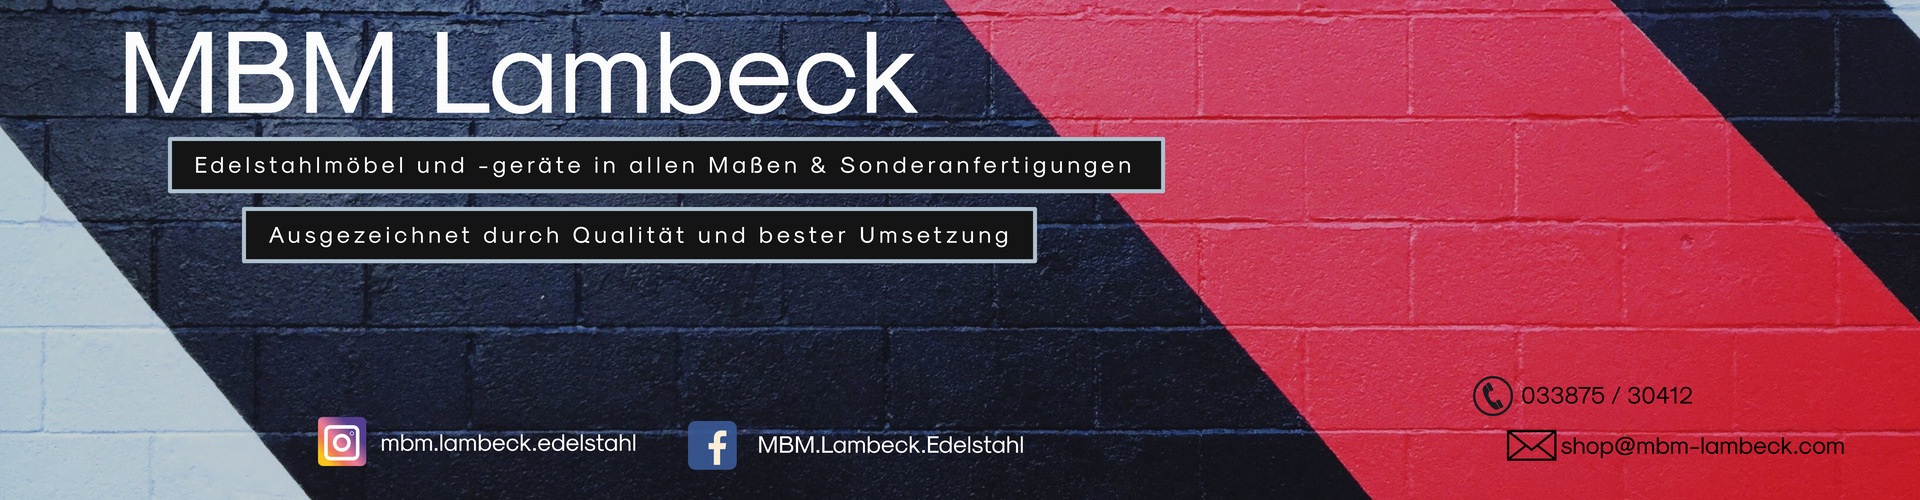 MBM Lambeck Kontaktformular